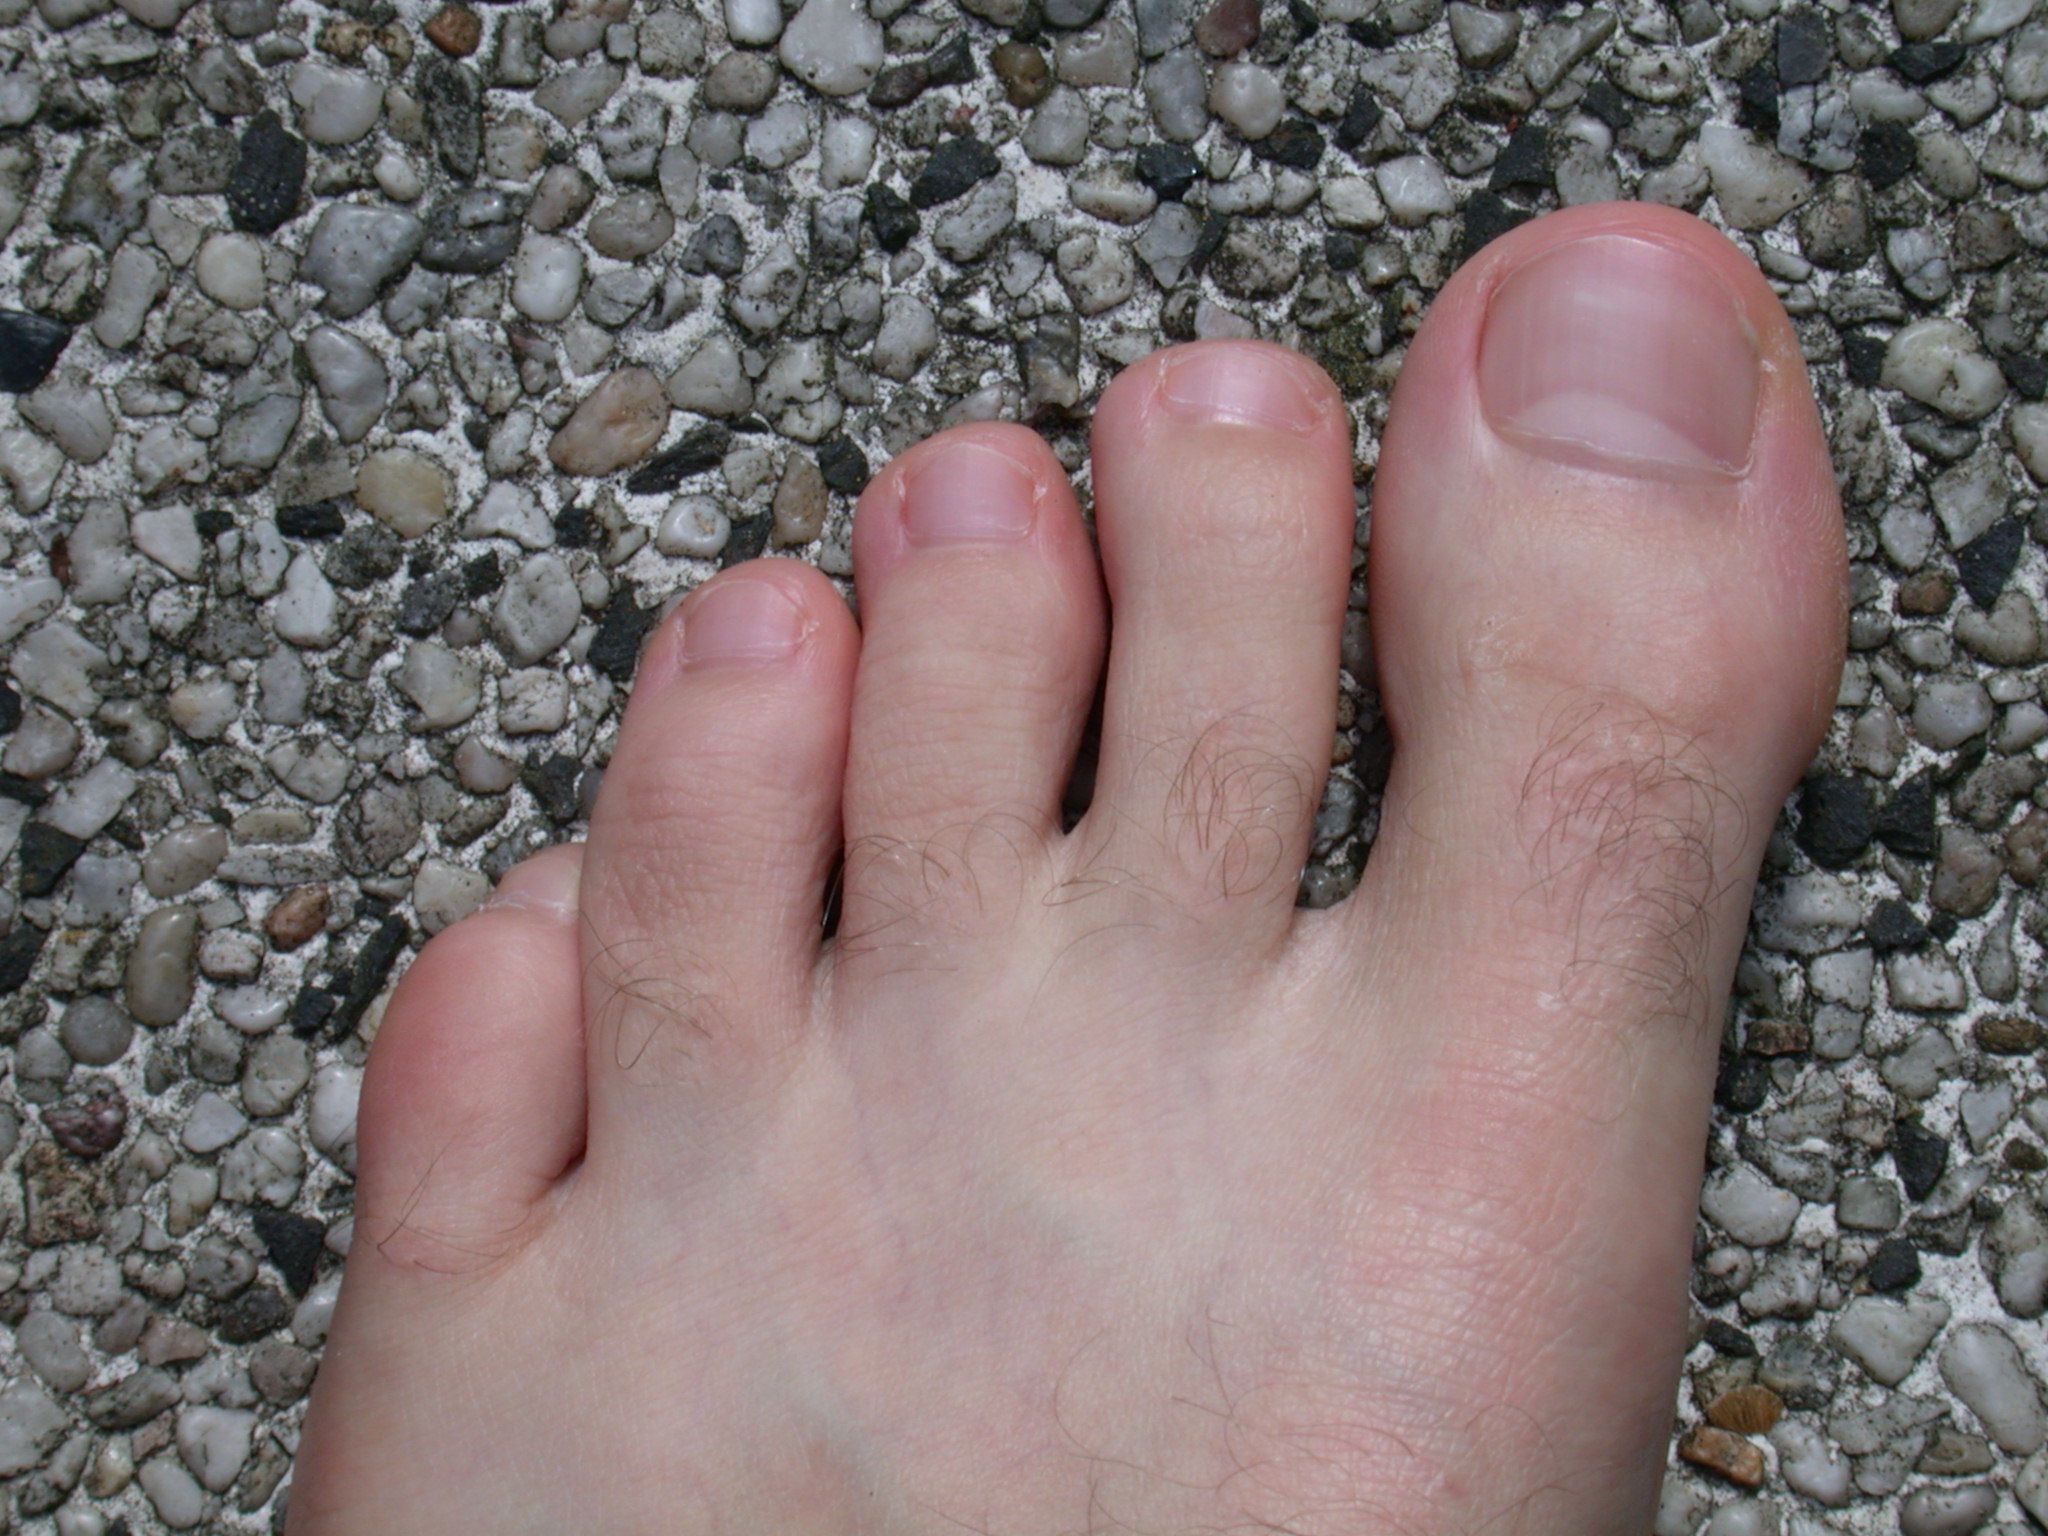 foot skin texture hair top flesh vein toe toes nail nails toenail toenails nature characters humanparts male